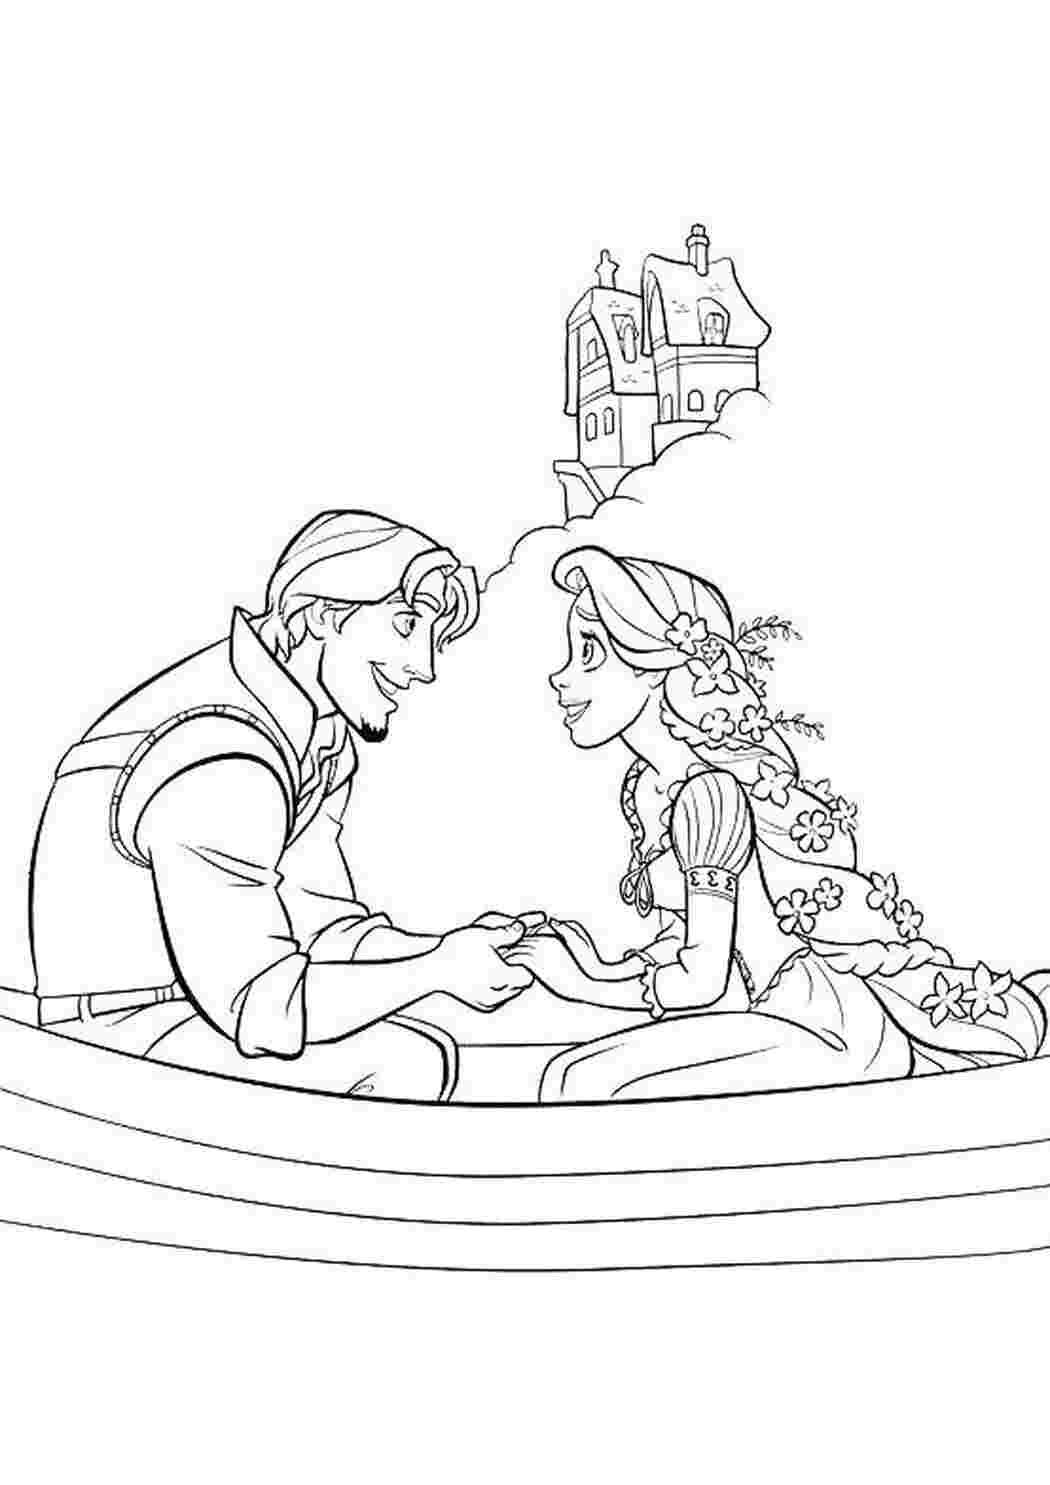 Раскраски картинки на рабочий стол онлайн Девушка и парень в лодке рядом с домом Раскраски для мальчиков